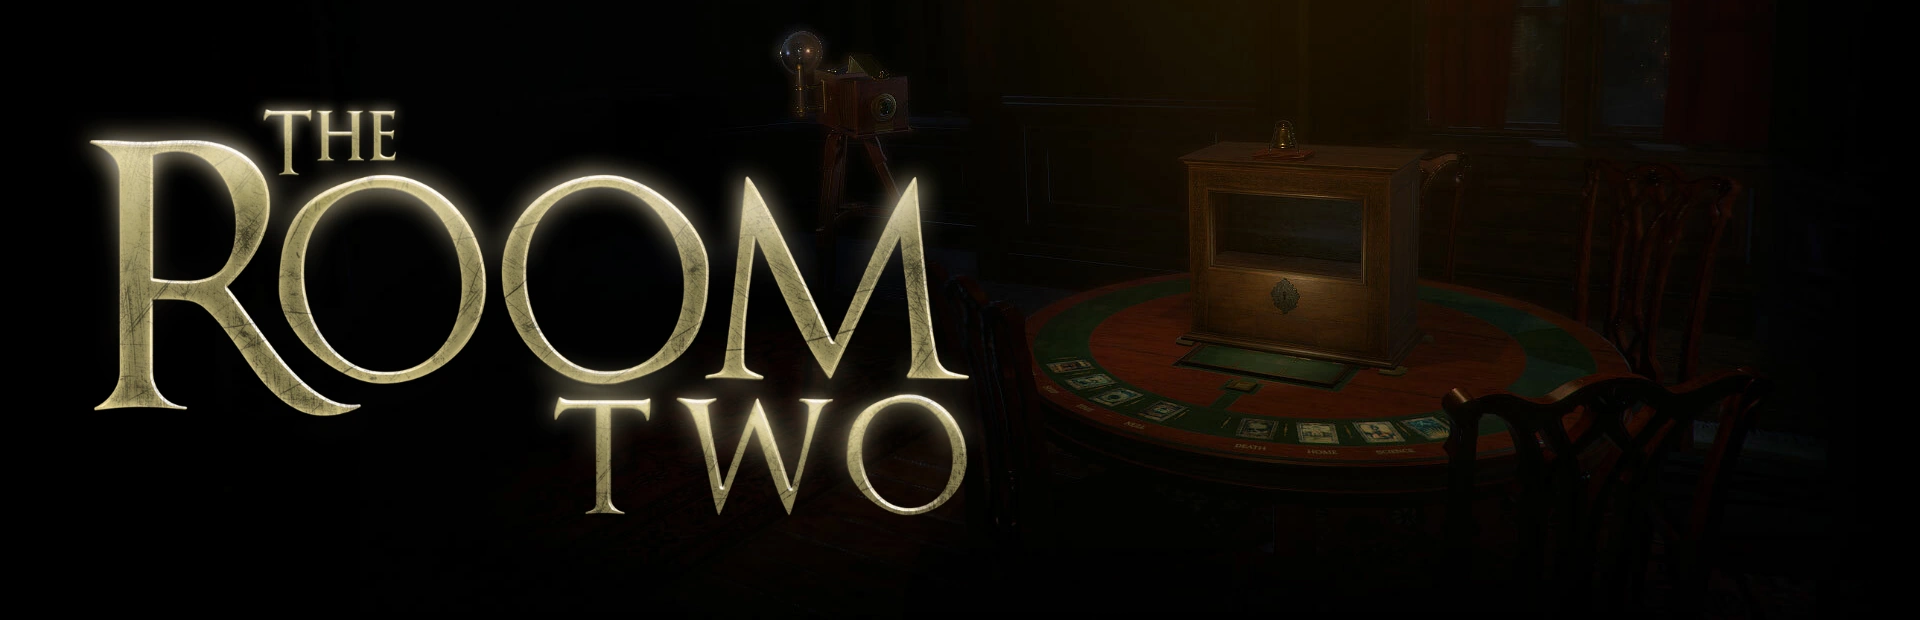 دانلود بازی The Room Two برای Pc | گیمباتو